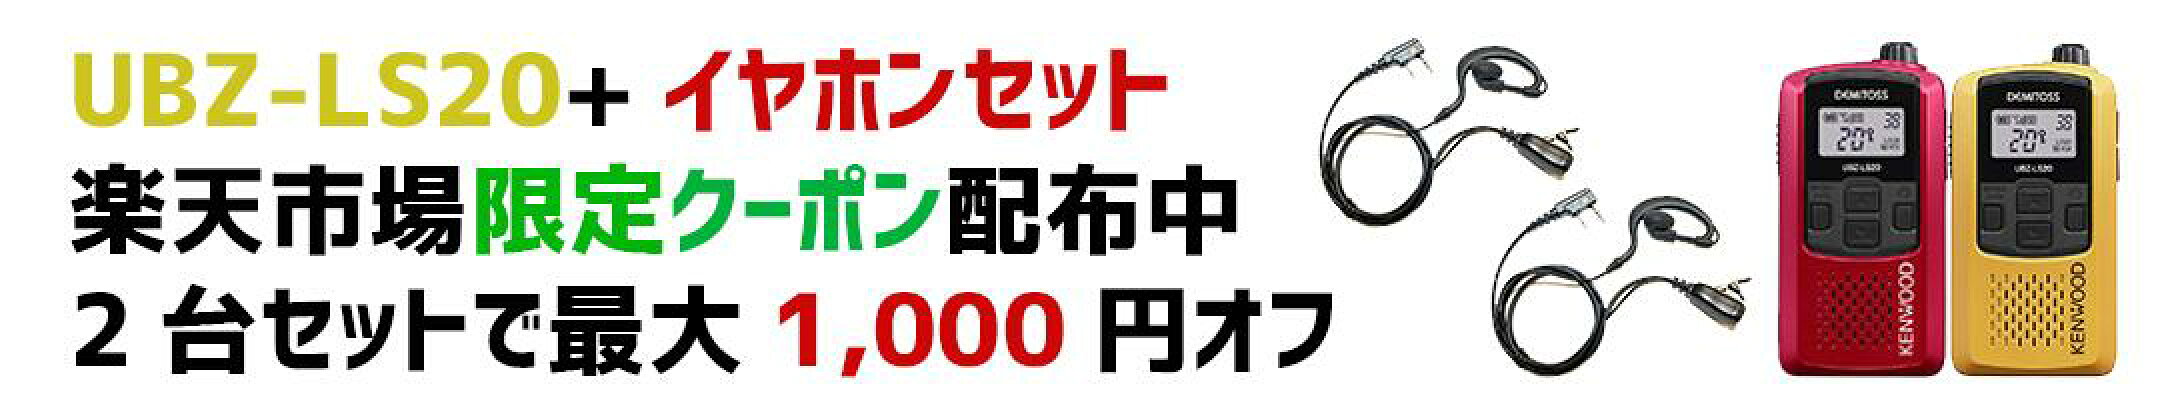 UBZ-LS20+イヤホンセット/単品で500円引き、2台セット1,000円引きクーポン配布中！